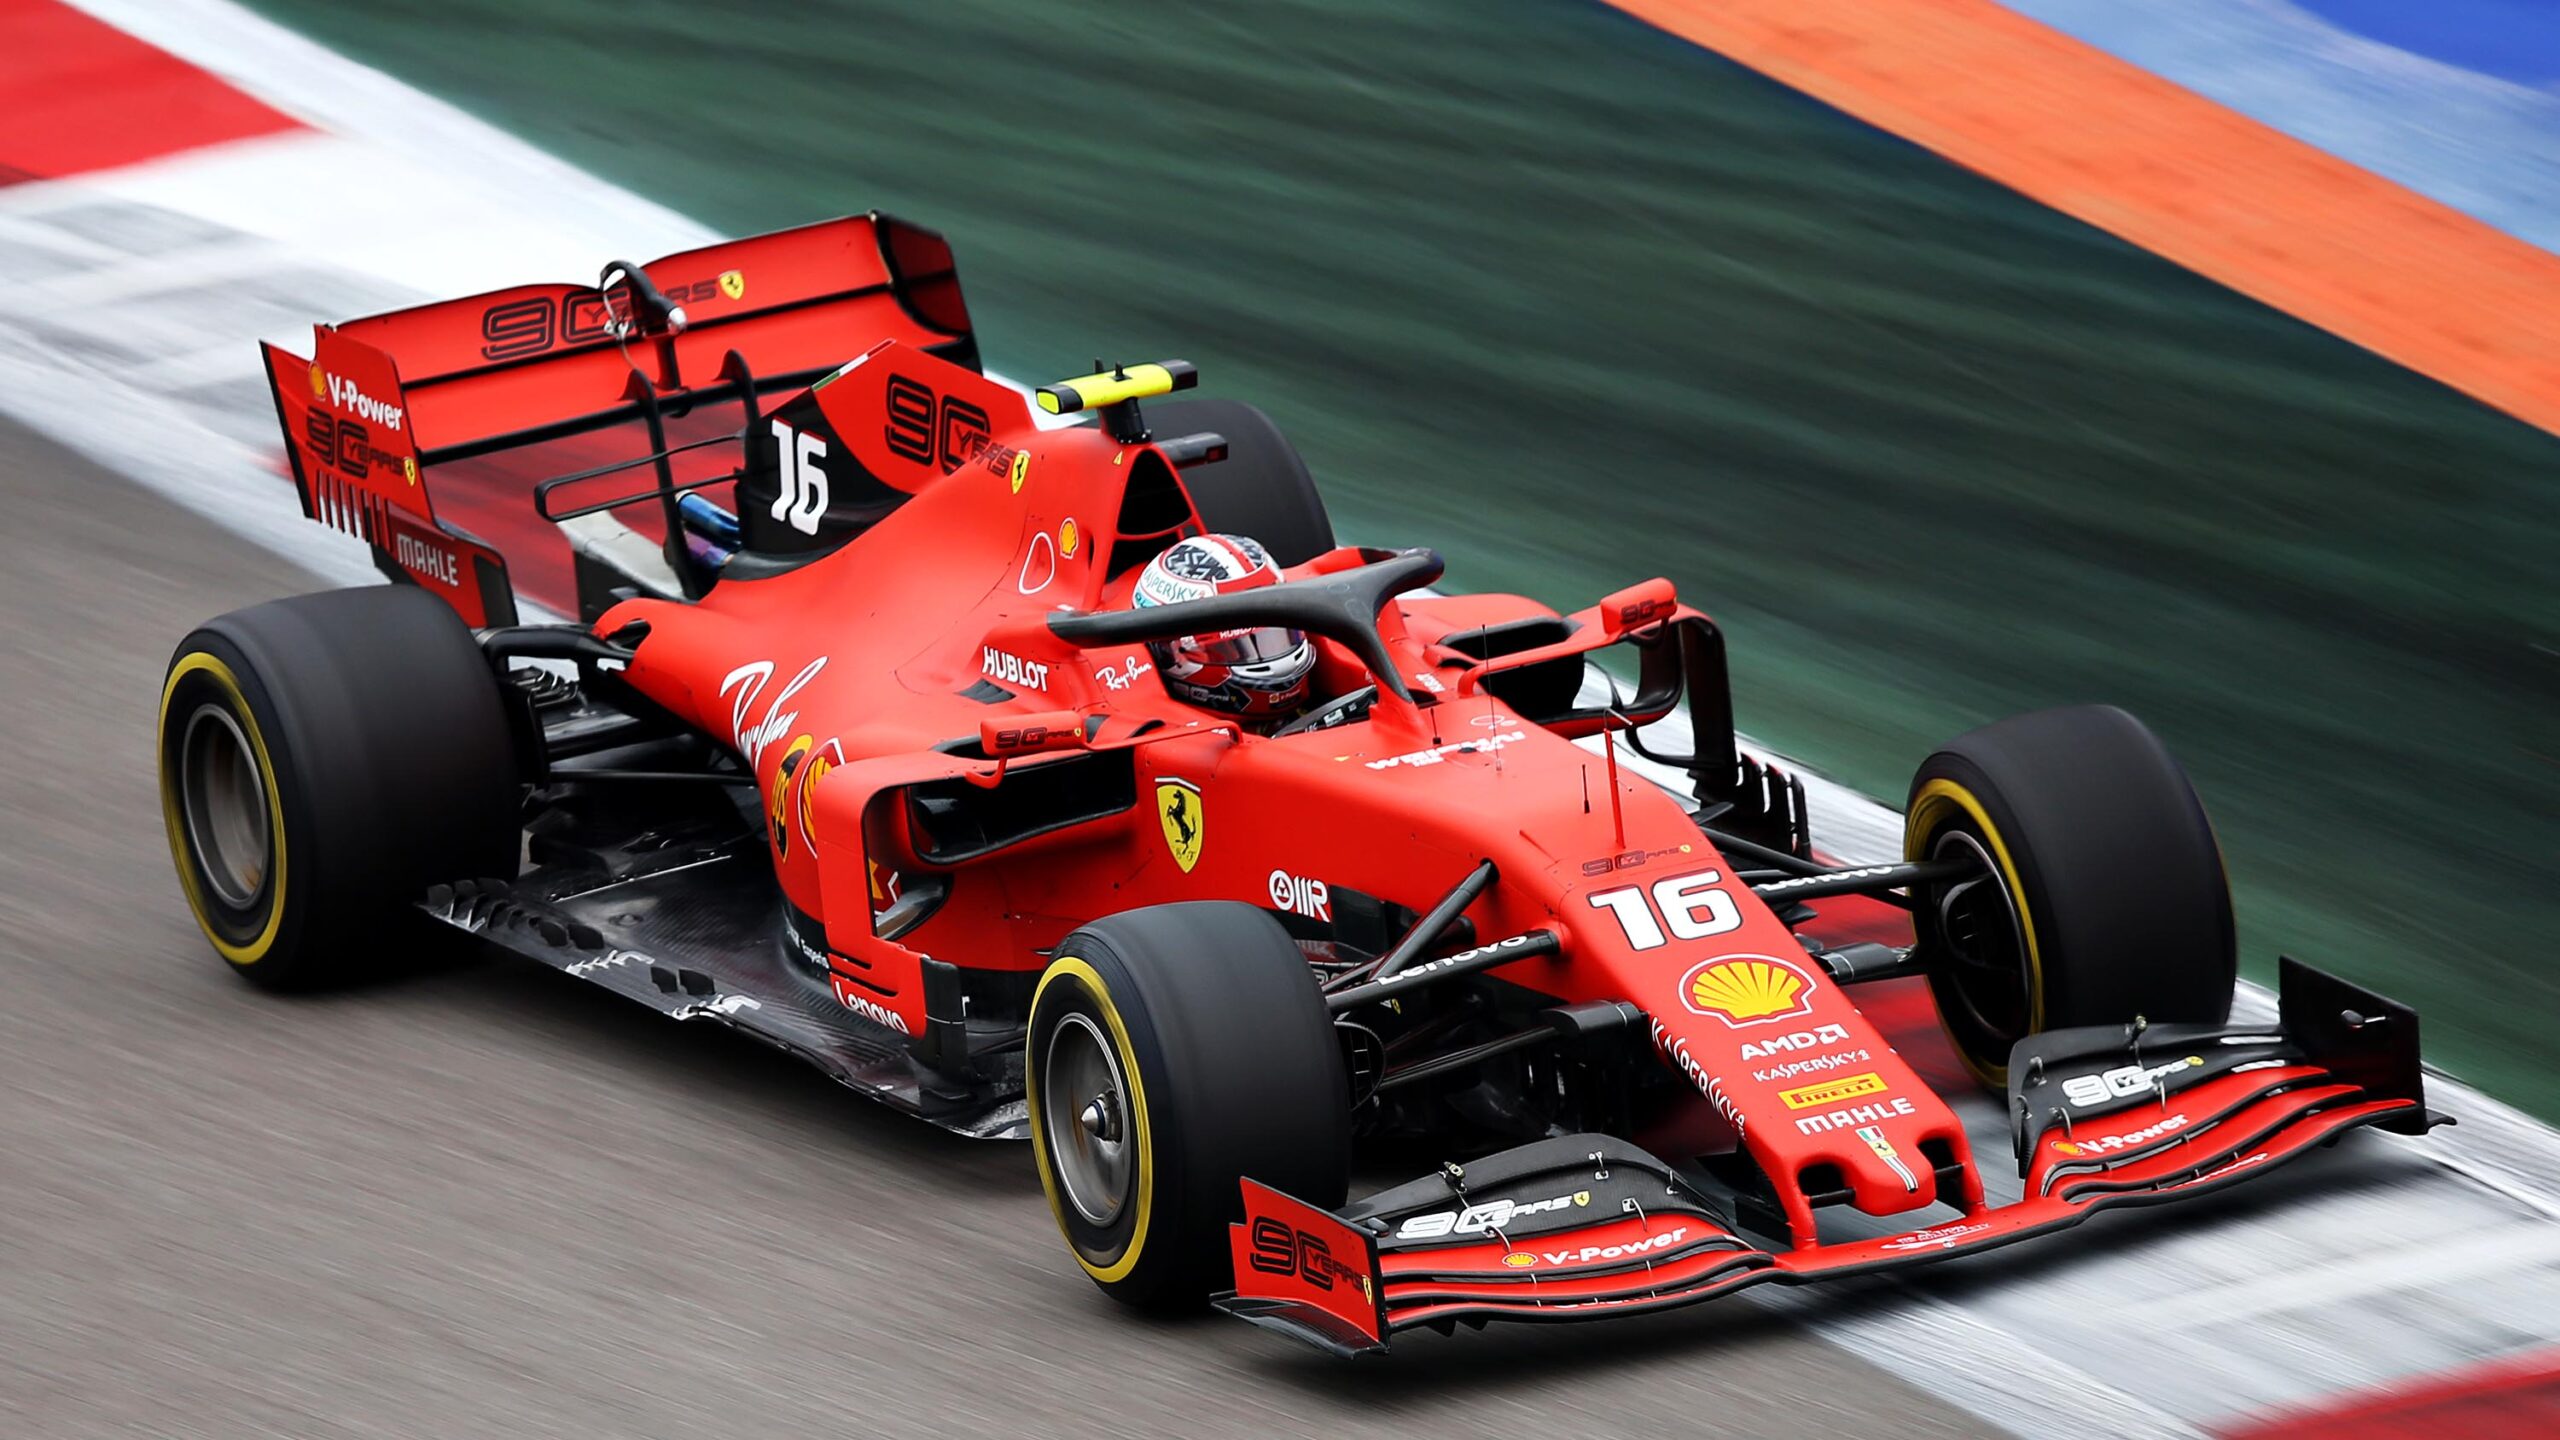 Schumacher va concura în Formula 1. Contractul a fost semnat